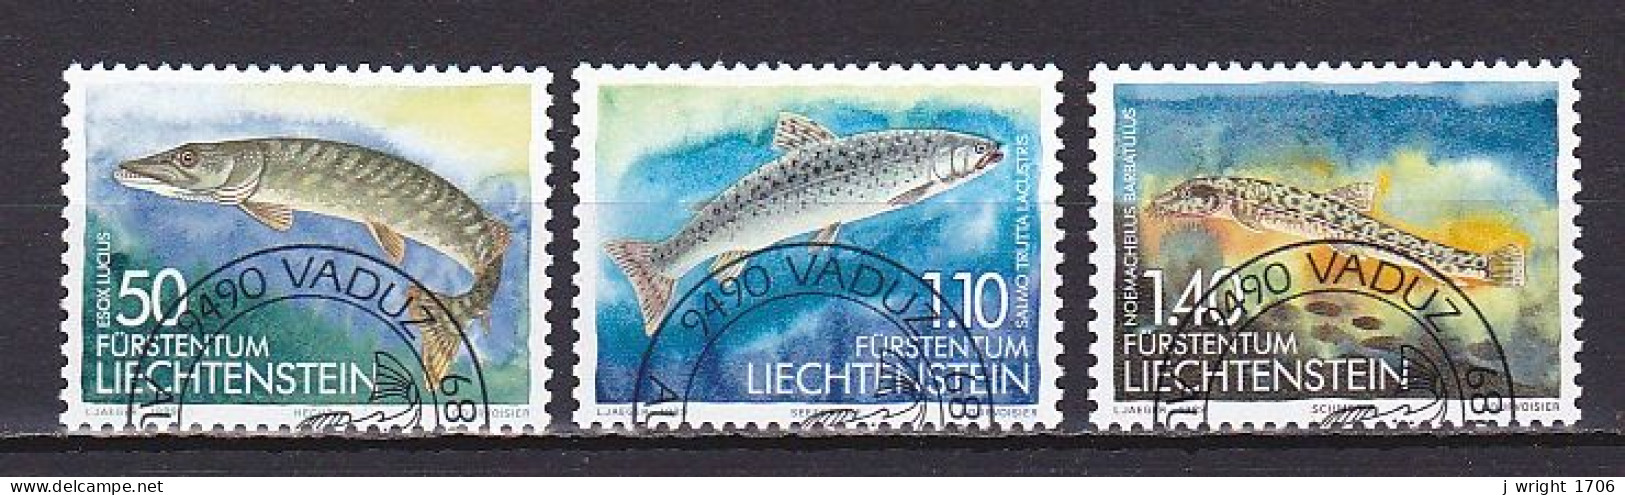 Liechtenstein, 1989, Fish 2nd Series, Set,  CTO - Usati